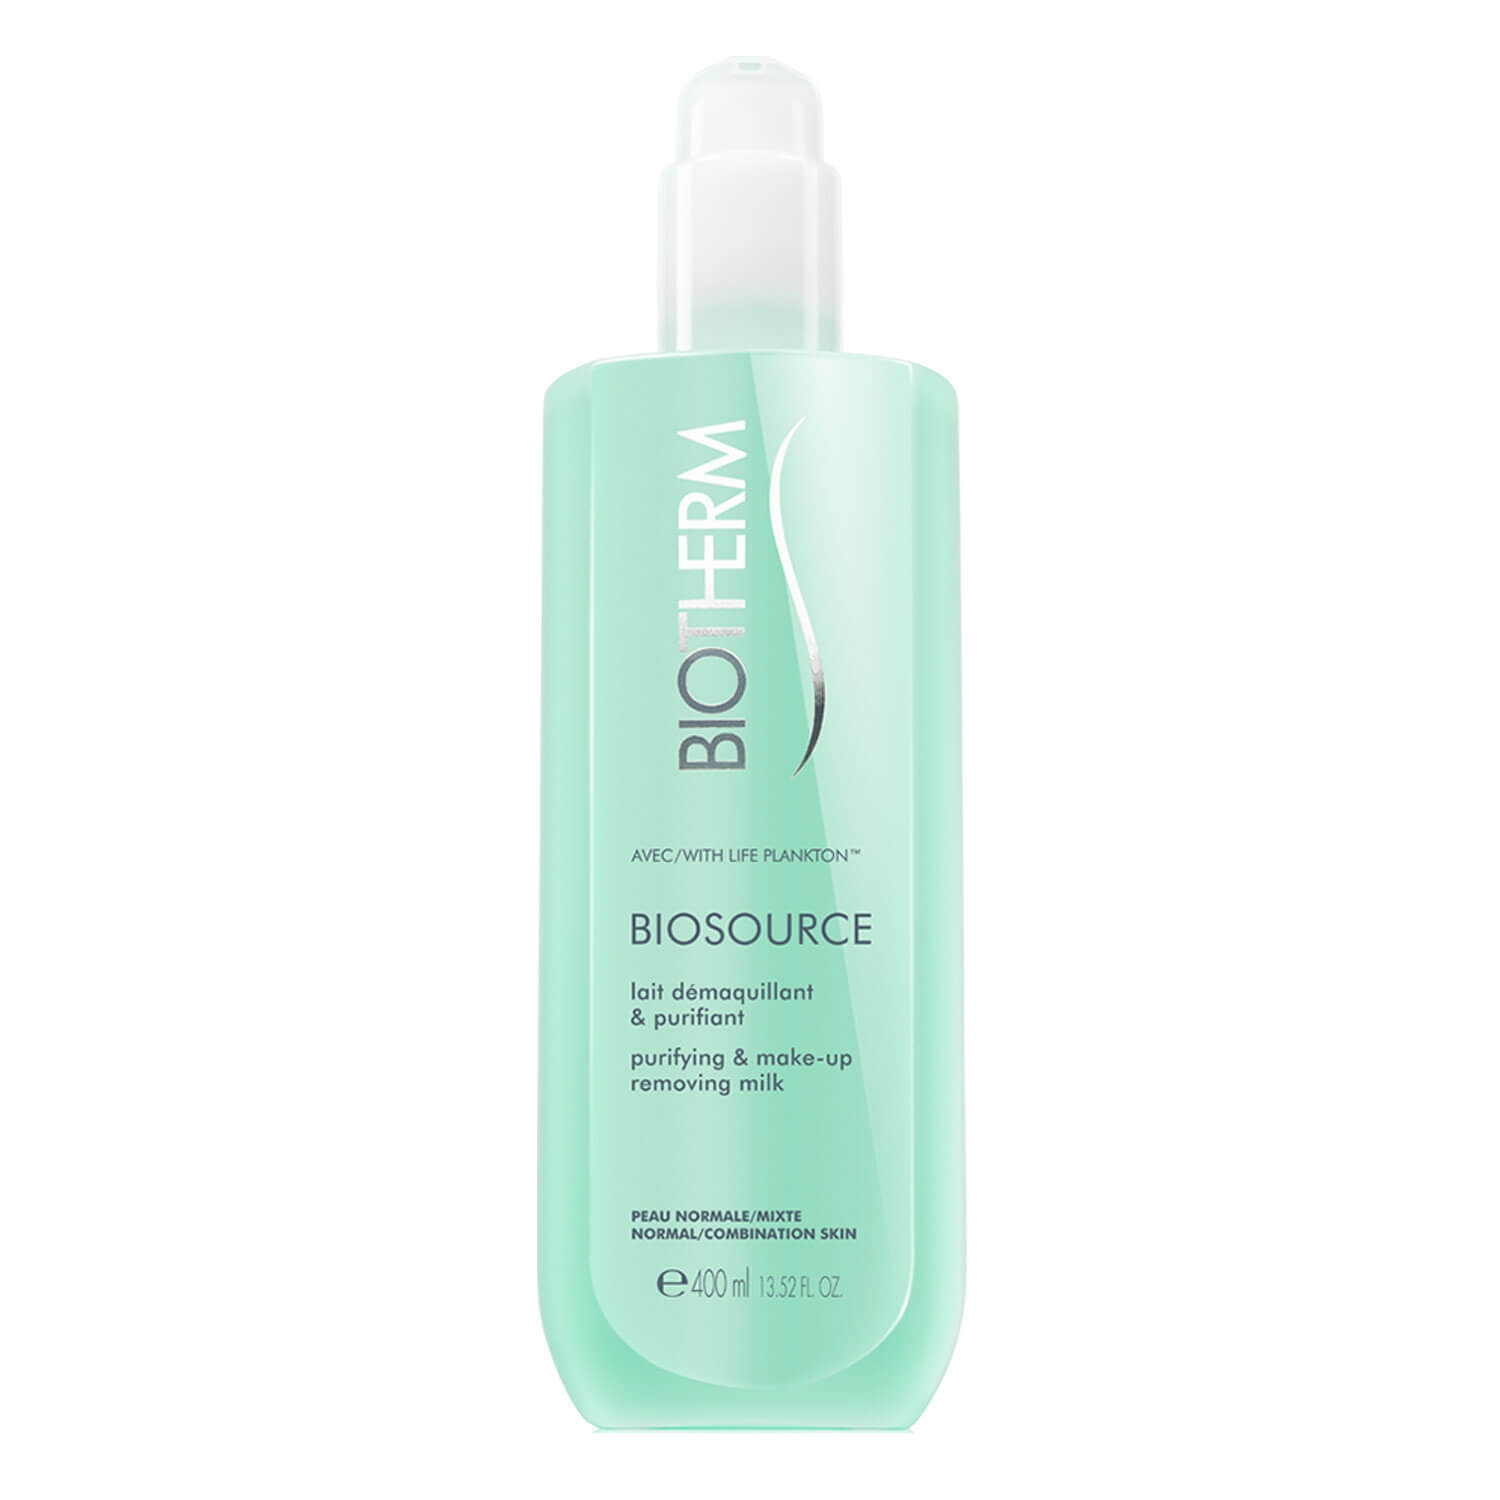 Produktbild von Biosource - Make-Up Removing Milk Normal/Combination Skin Limited Edition